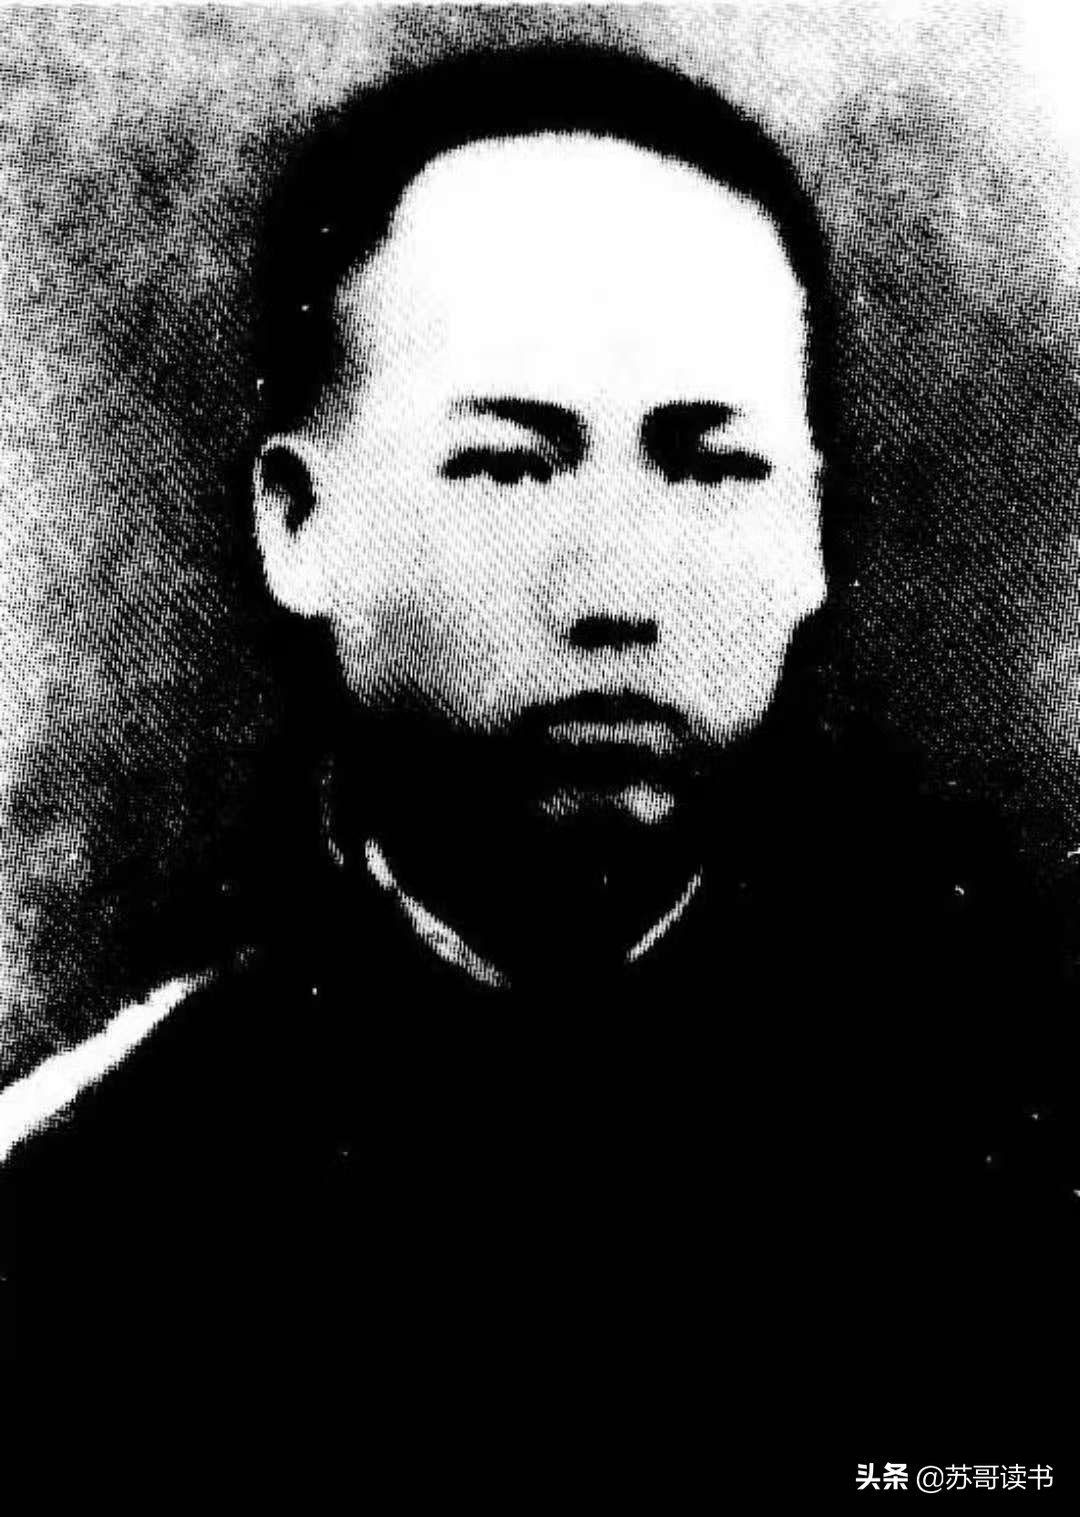 青年时期的毛泽东，绝对是个有趣的灵魂-2.jpg